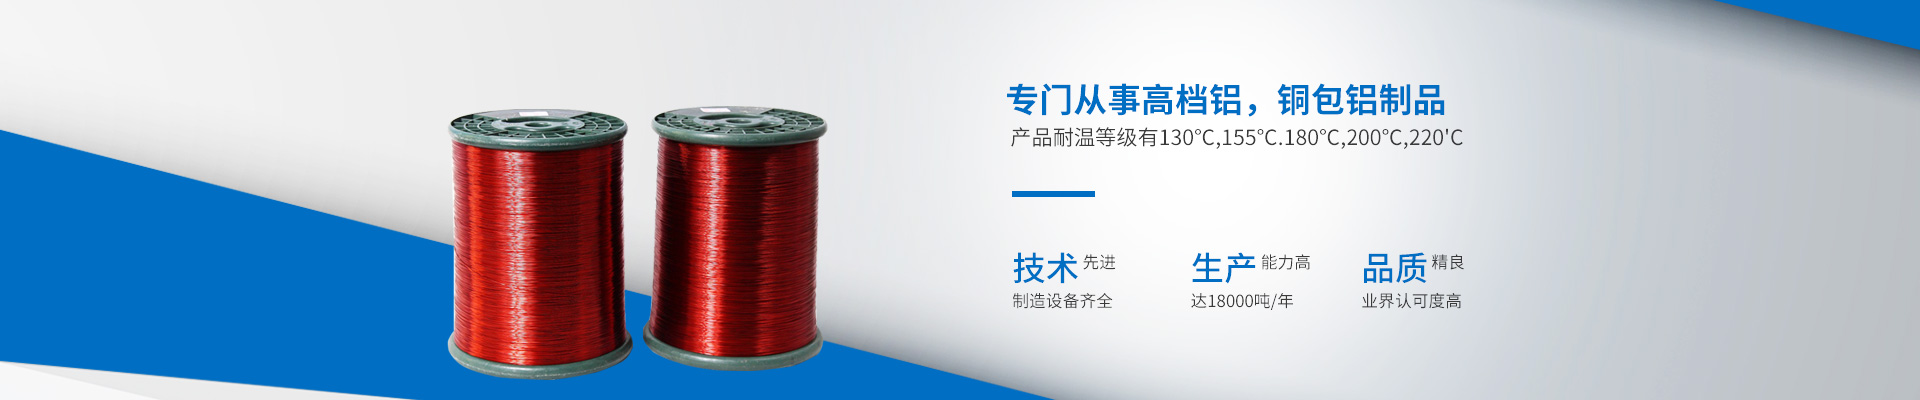 湖南奇洛电工器材有限公司_湖南高档铝|湖南铜包铝制品